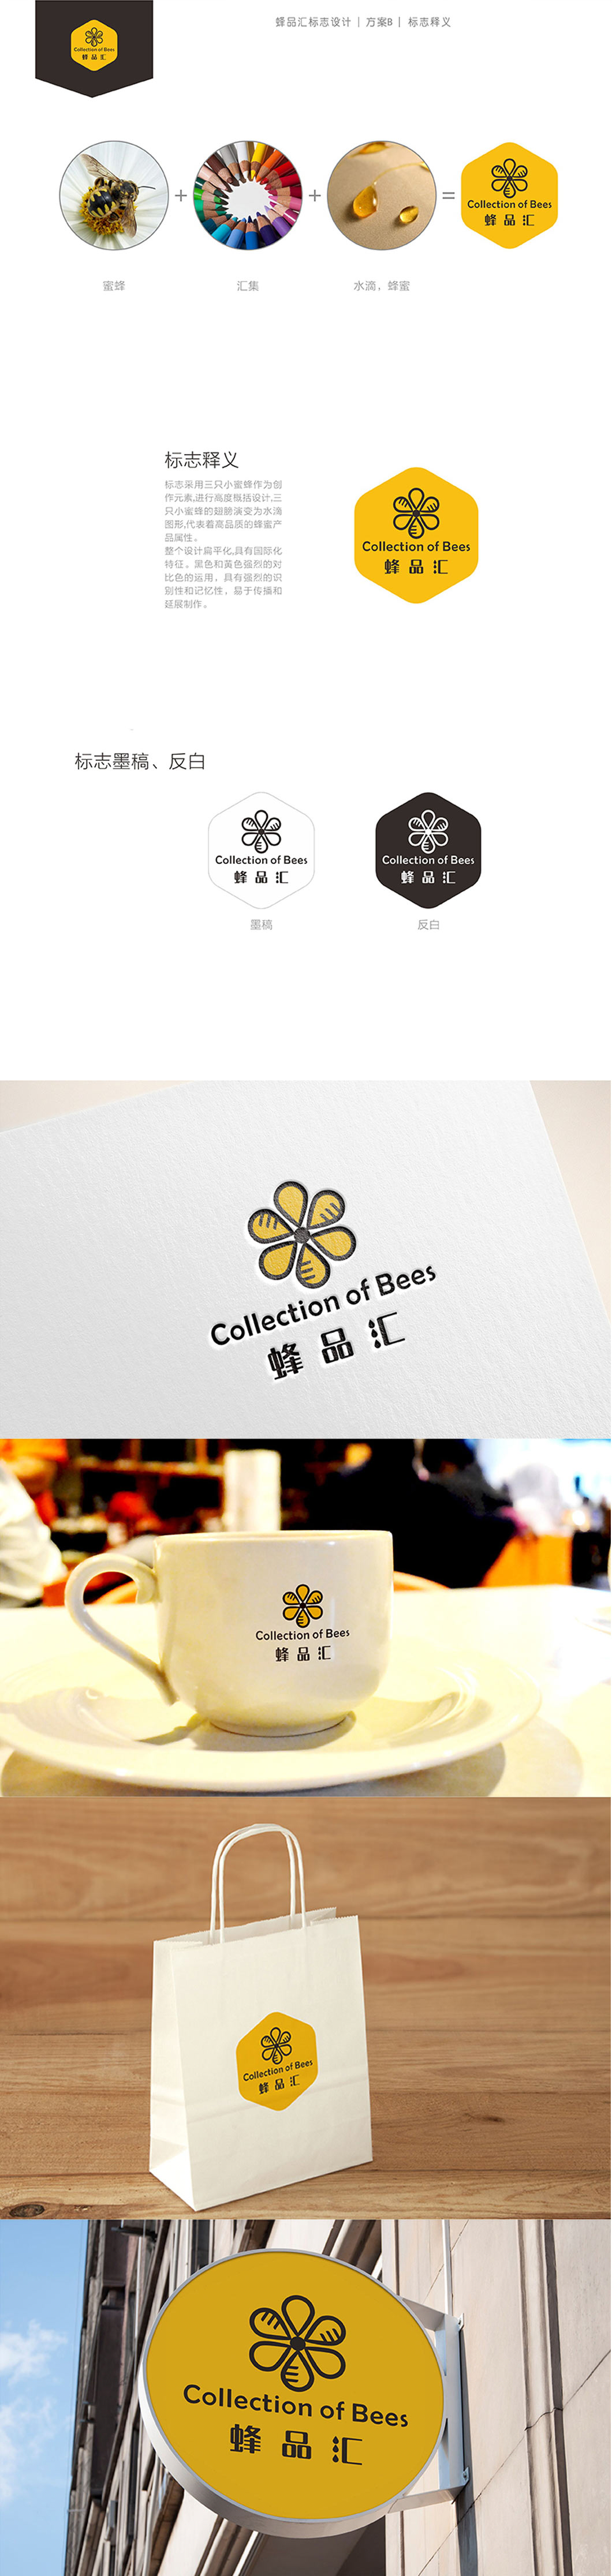 【珠海蜂品汇】logo设计